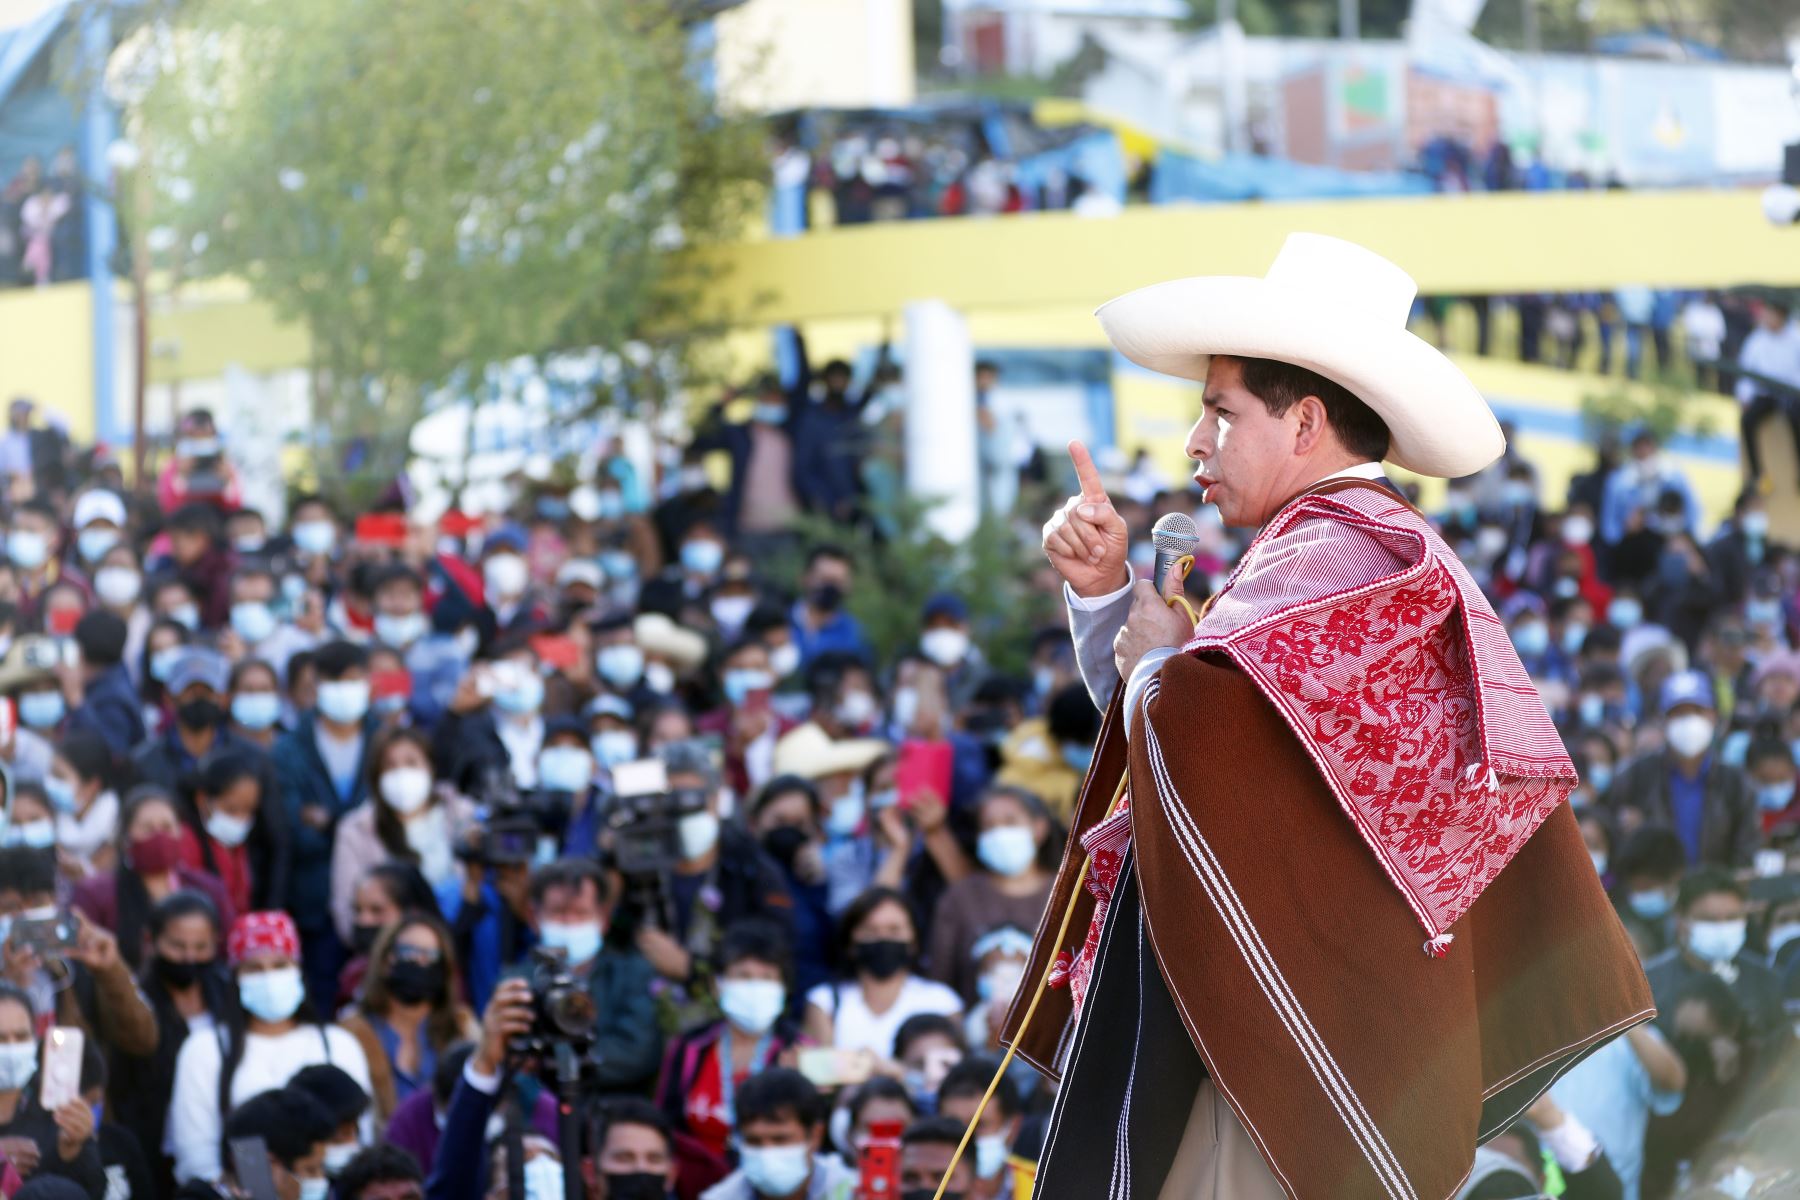 El presidente Pedro Castillo viajó a Cajamarca el 13 de septiembre, en el marco de las acciones de gobierno descentralizado. Foto: Andina.